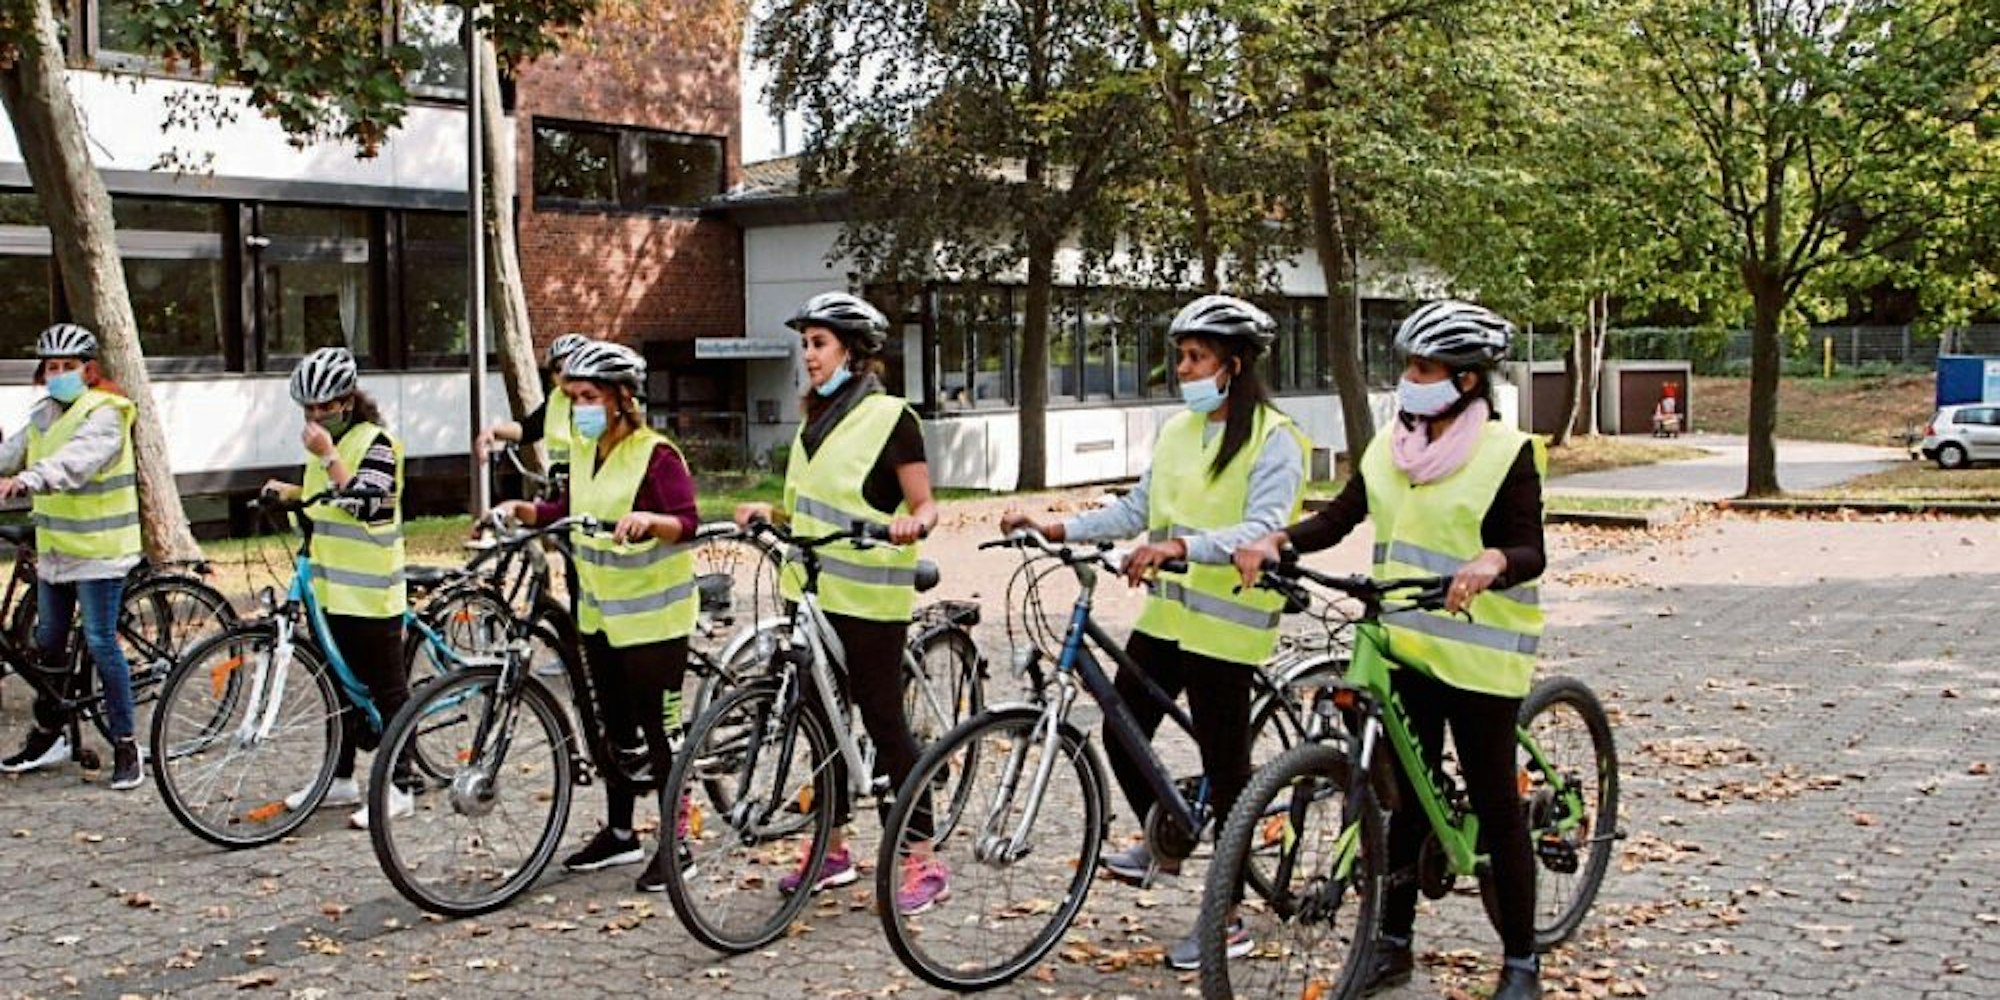 Top ausgestattet: Mit Warnweste und Helm konnten die Radfahrerinnen im Praxisteil des Workshops richtig loslegen.